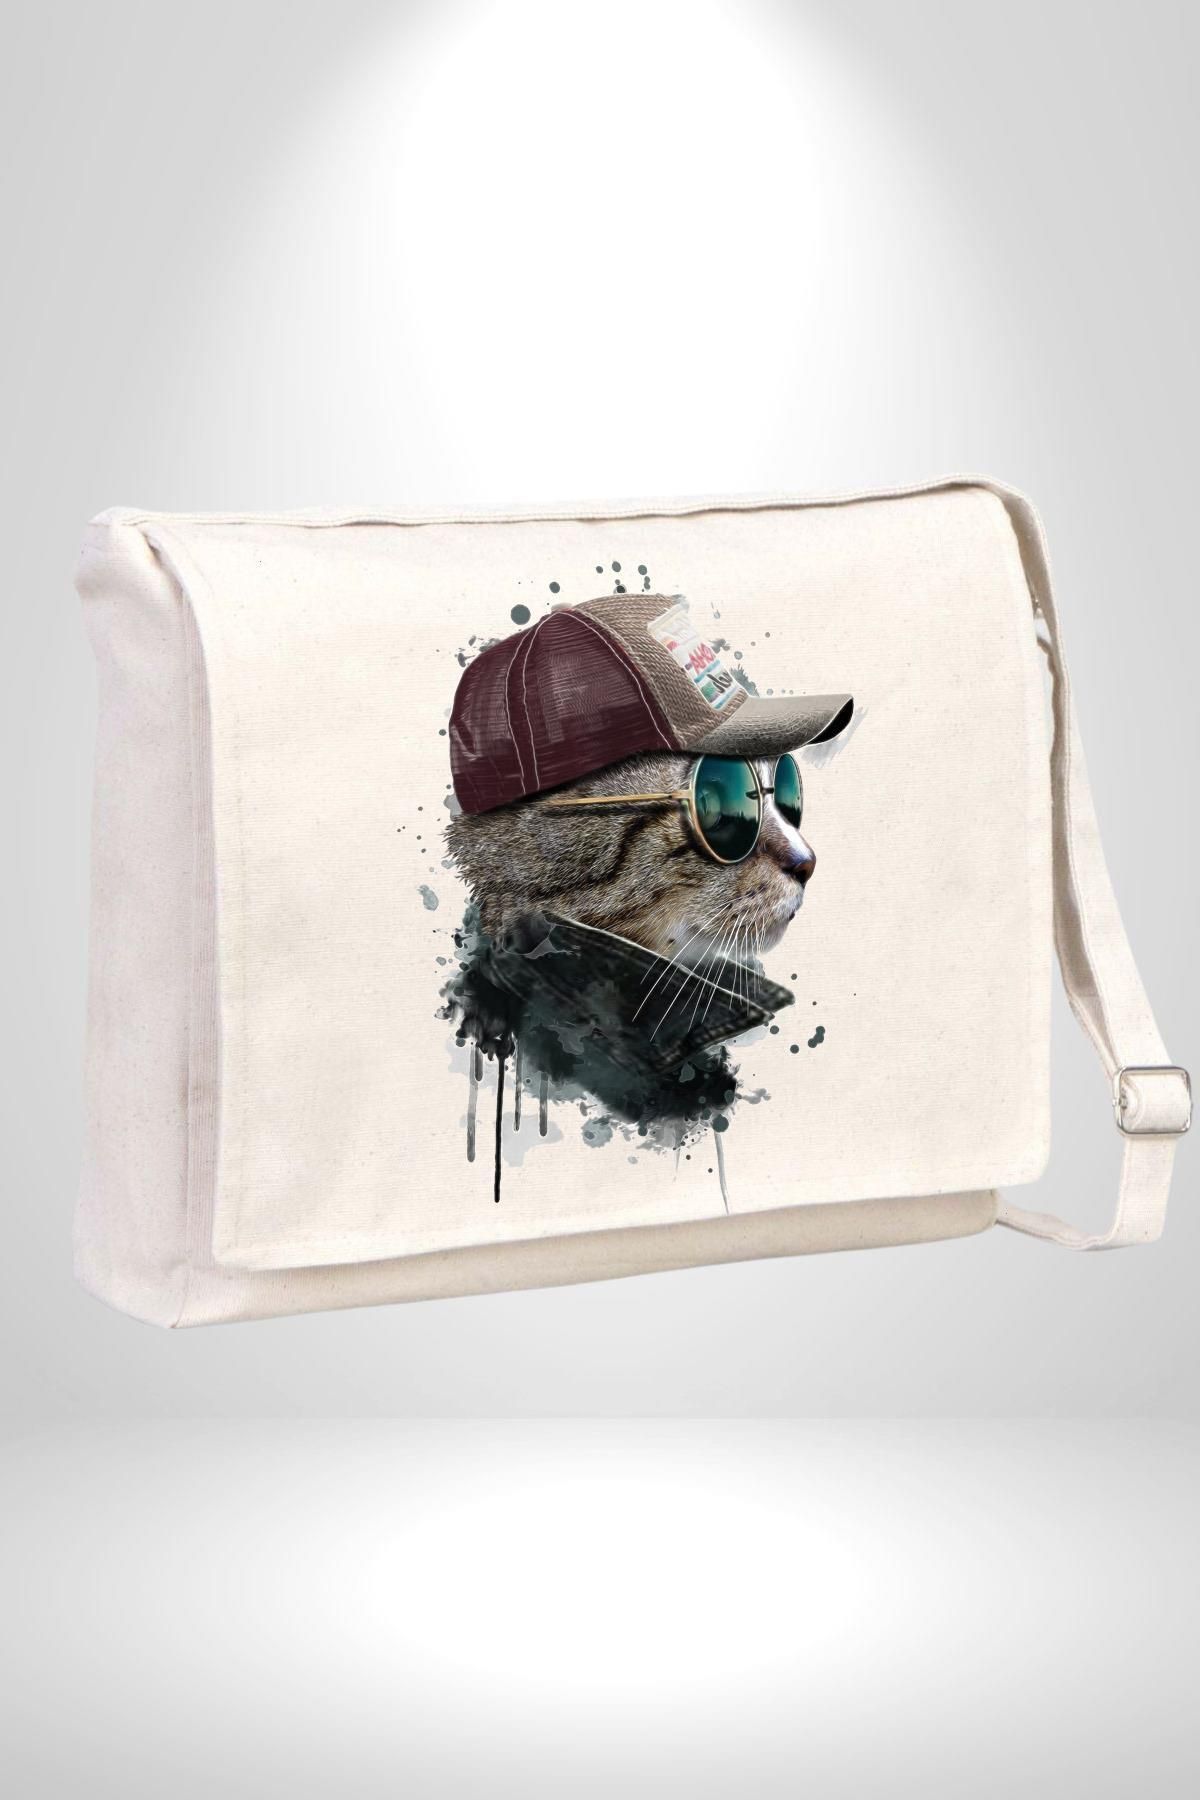 neopolis Pilot Çeketli Deri Şapkalı Cool Kedi Kadın Erkek Çocuk Kanvas Postacı Çanta